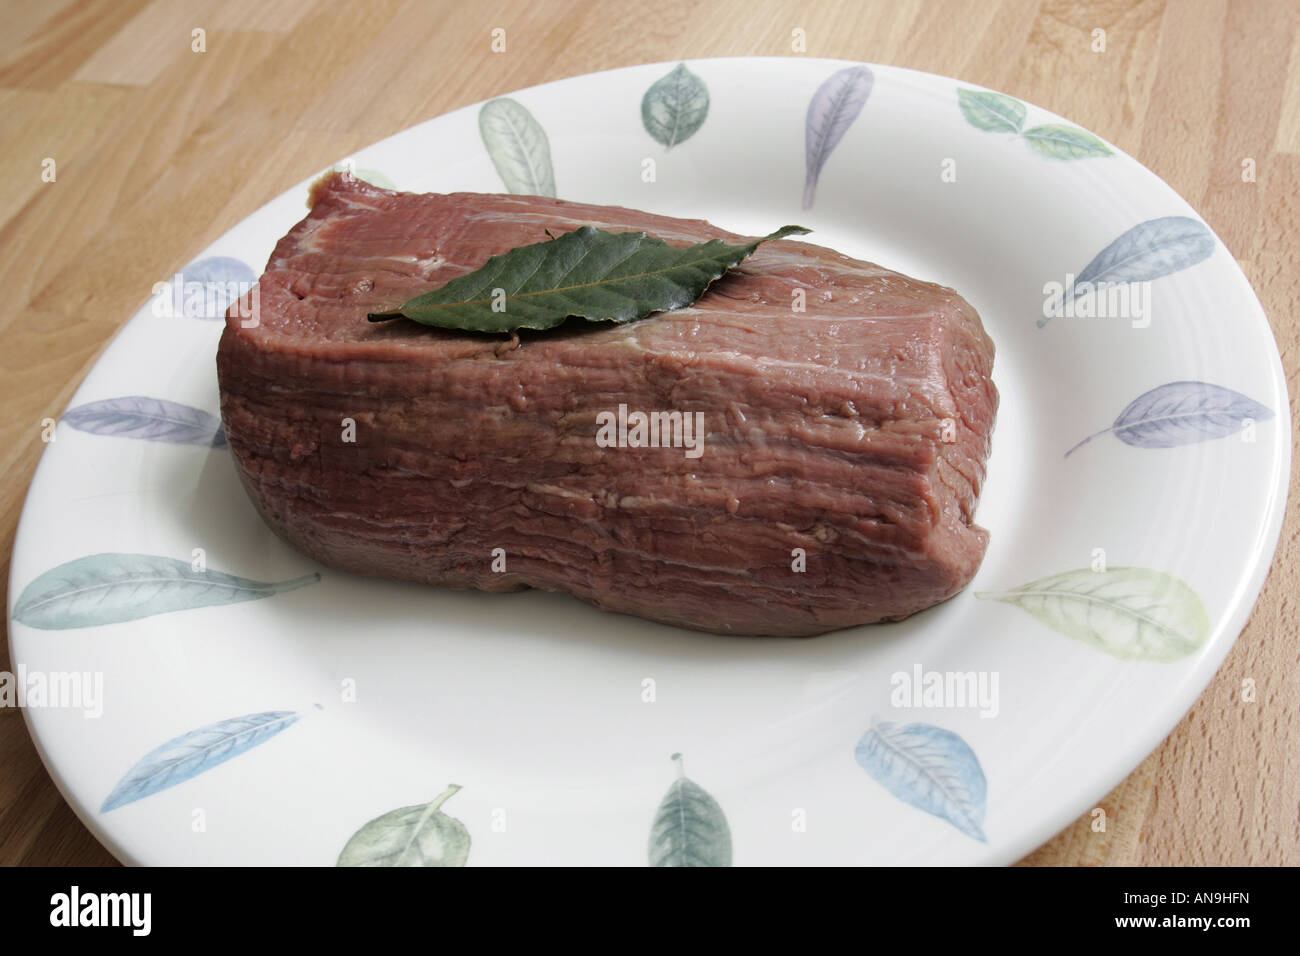 Una porción de carne cruda en una placa. Foto de stock